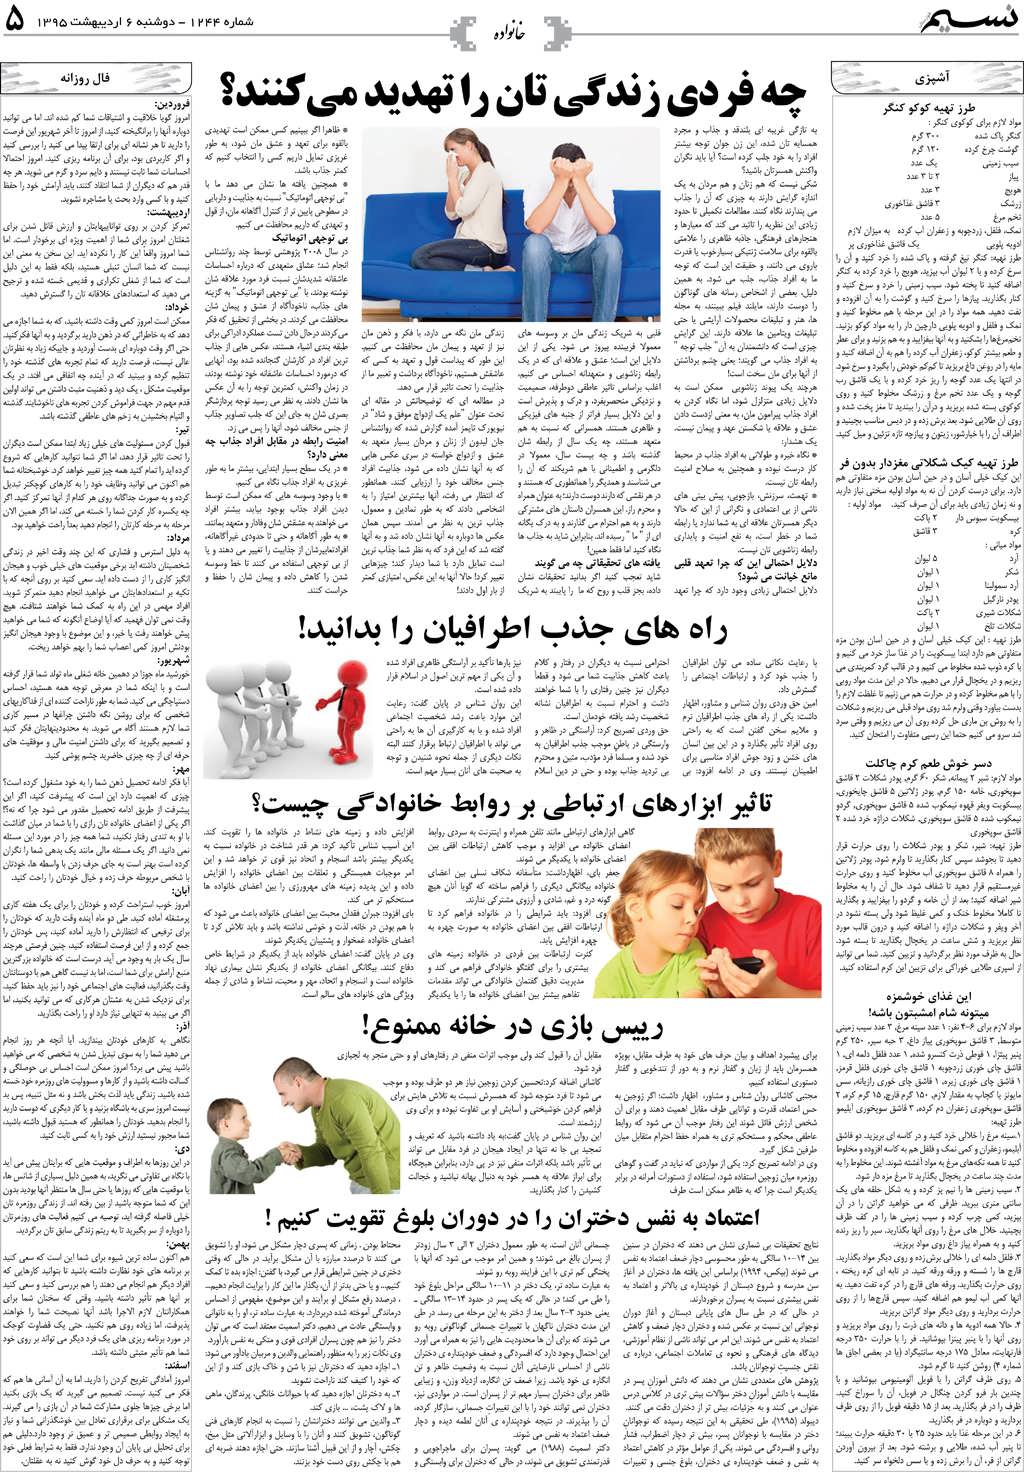 صفحه خانواده روزنامه نسیم شماره 1244